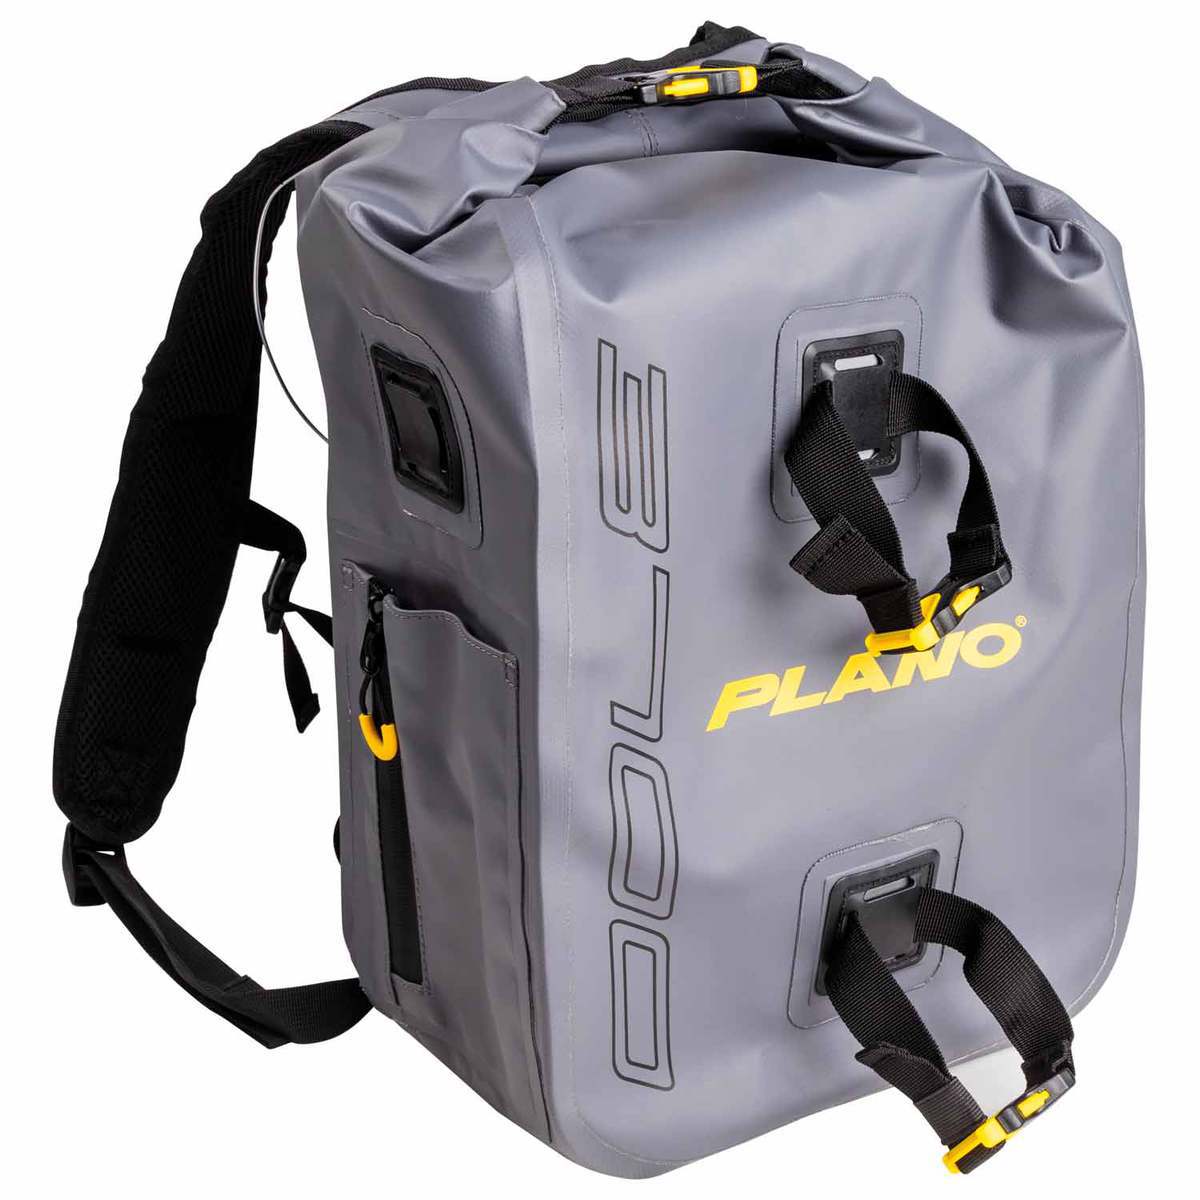 https://www.sportsmans.com/medias/plano-z-series-3700-waterproof-tackle-backpack-grey-1653149-1.jpg?context=bWFzdGVyfGltYWdlc3w5MjY1MXxpbWFnZS9qcGVnfGFXMWhaMlZ6TDJneE5pOW9ZalV2T1RZeU1UQTVPRGN5TlRRd05pNXFjR2N8ZDk5YWFiMWE4NzlkMDM3MDFlNmUwMjU3NmU3OGUzYmRmOWQ5ZjRmMDY3MWM1NTgxZTVmYjFlYTllMThmOTc2ZA